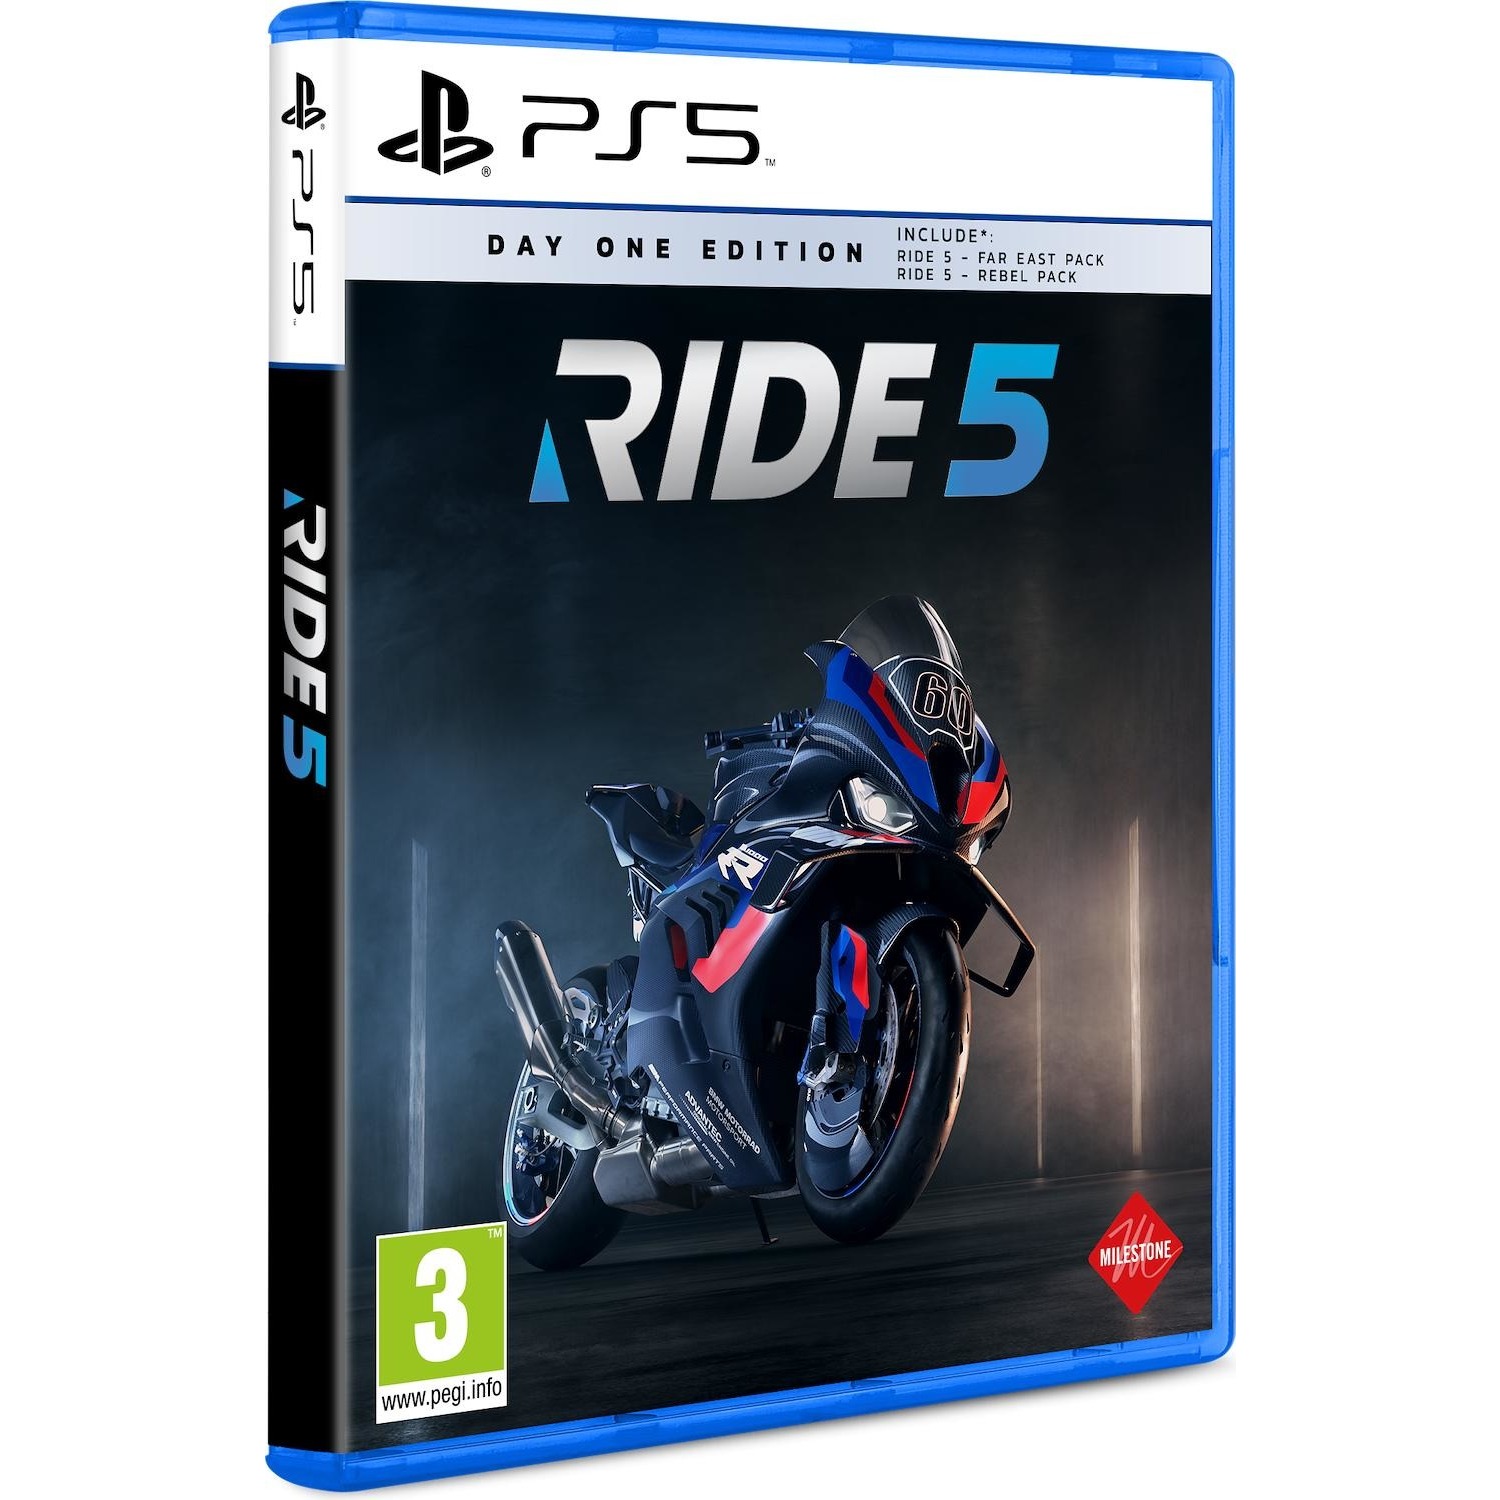 Immagine per Gioco PS5 Ride 5 - Dayone Edition da DIMOStore